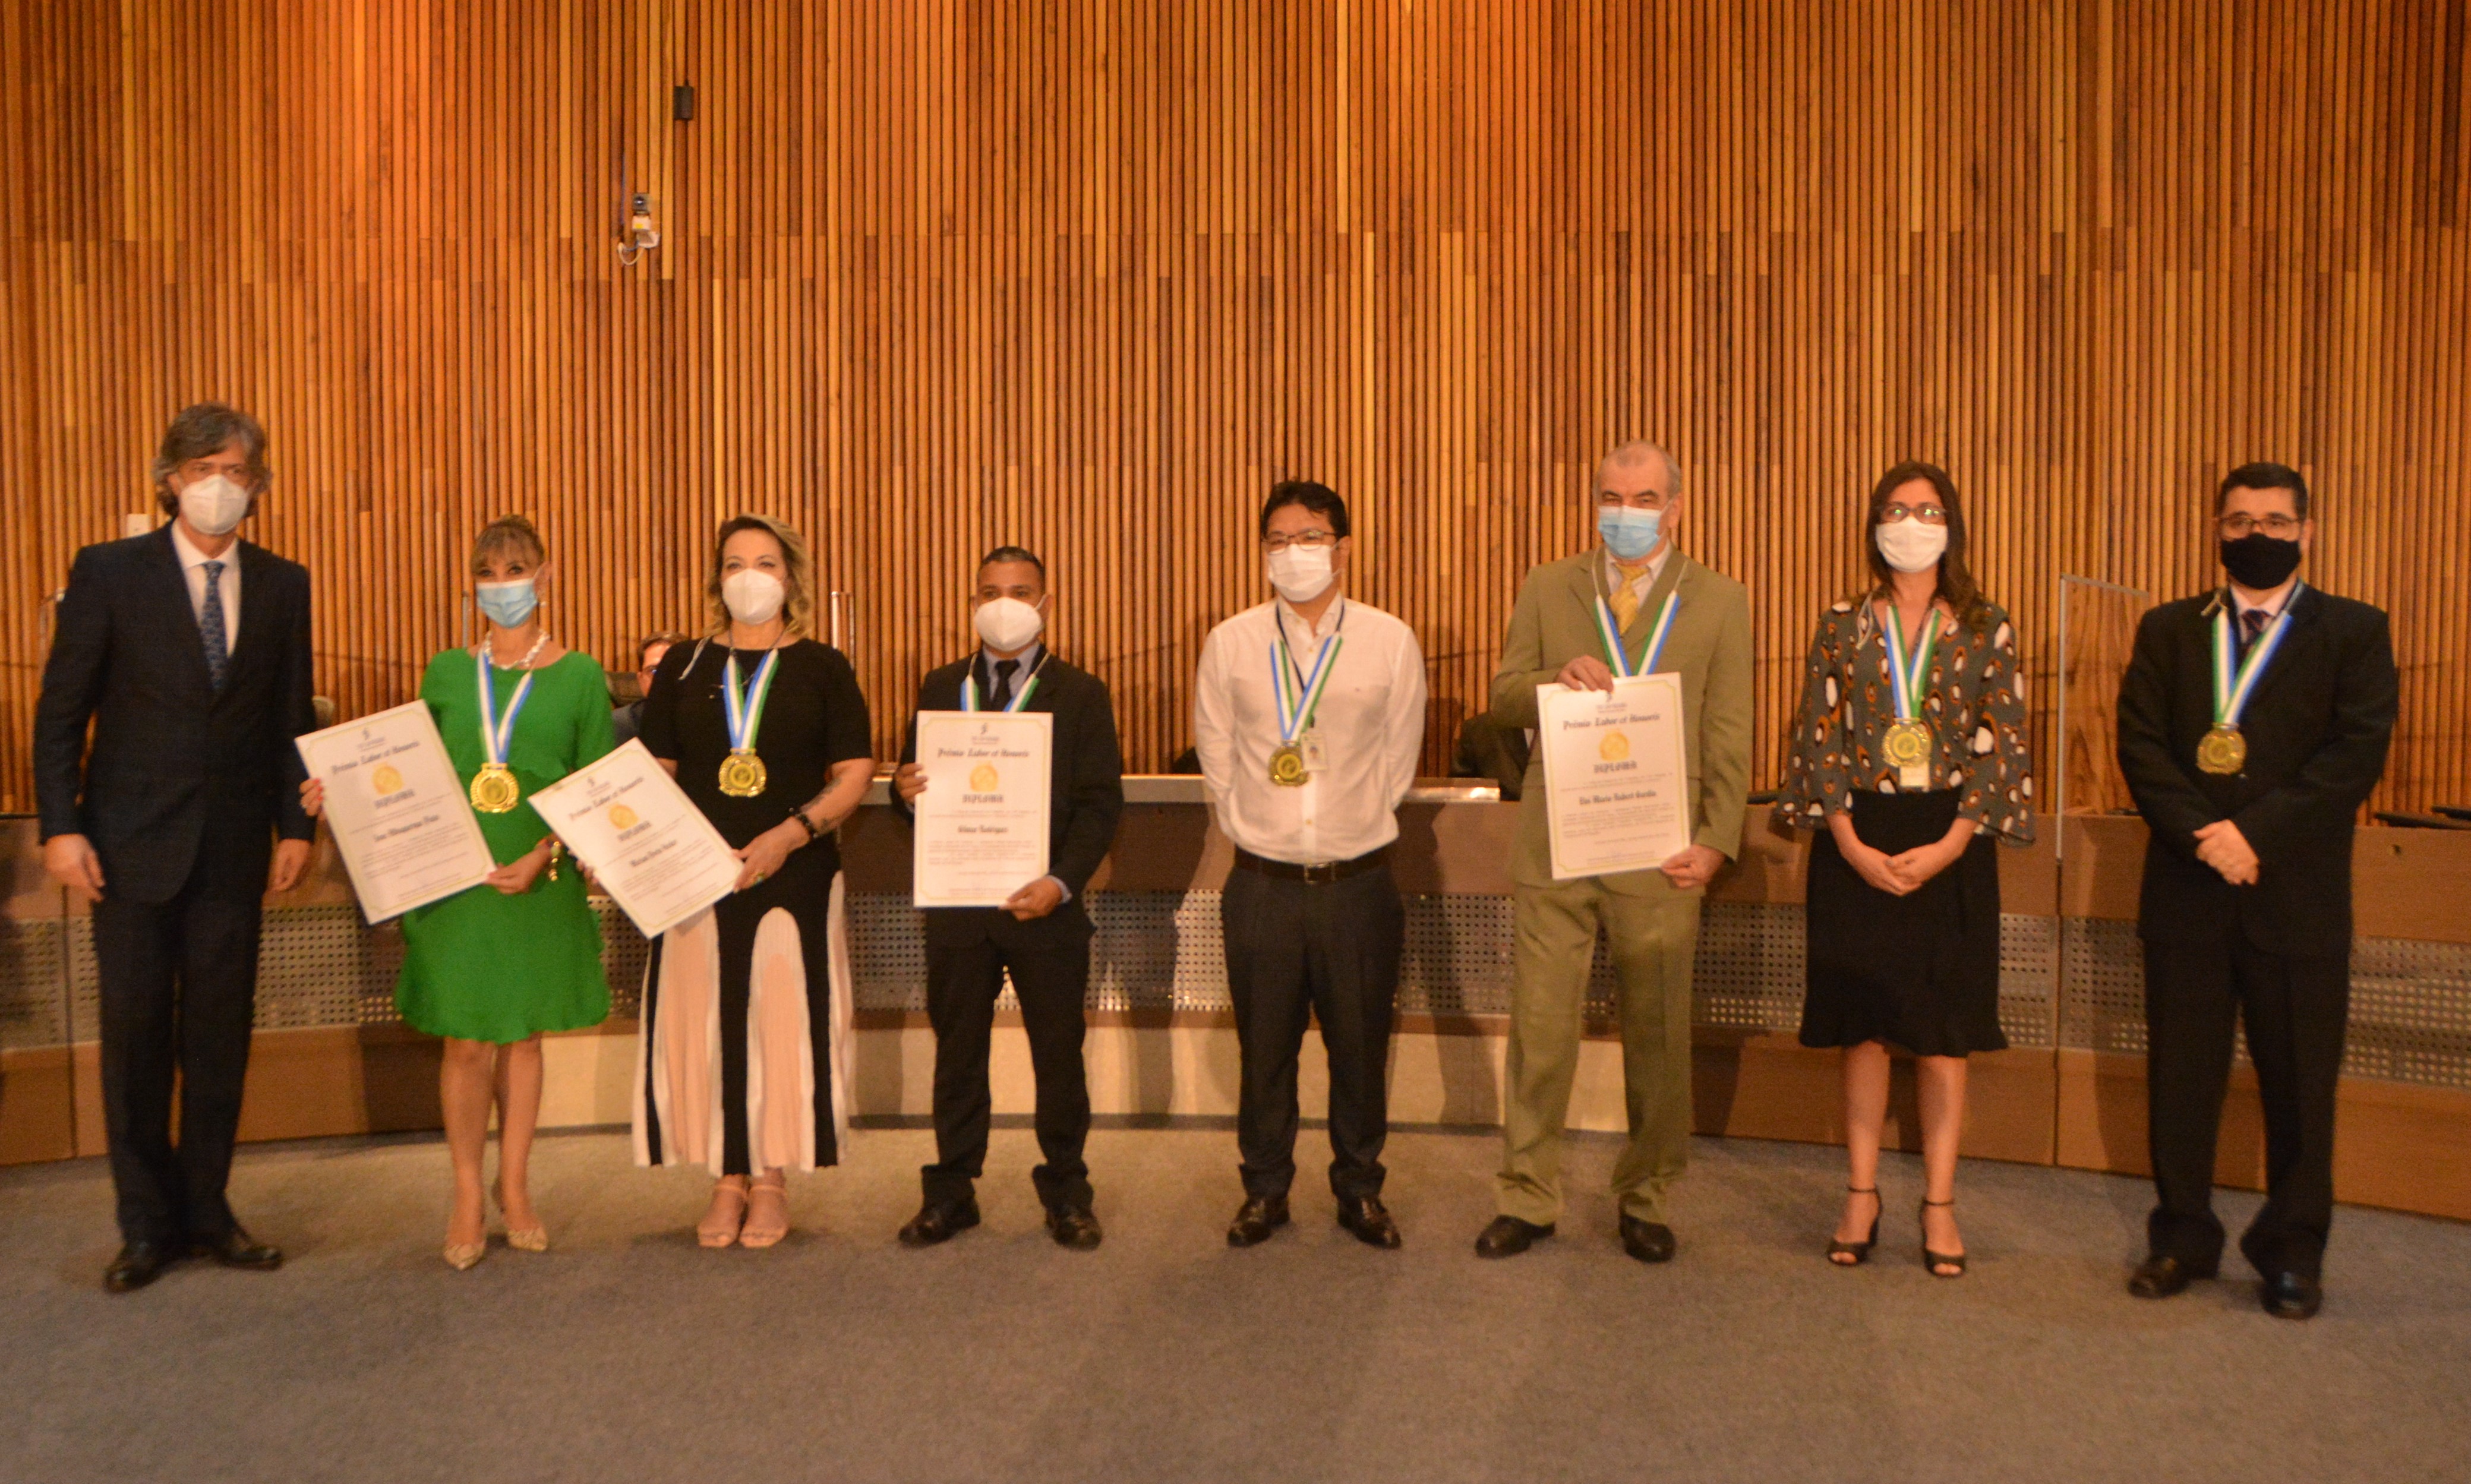 Foto dos participantes do Gabinete do Desembargador João de Deus Gomes de Souza com seus certificados